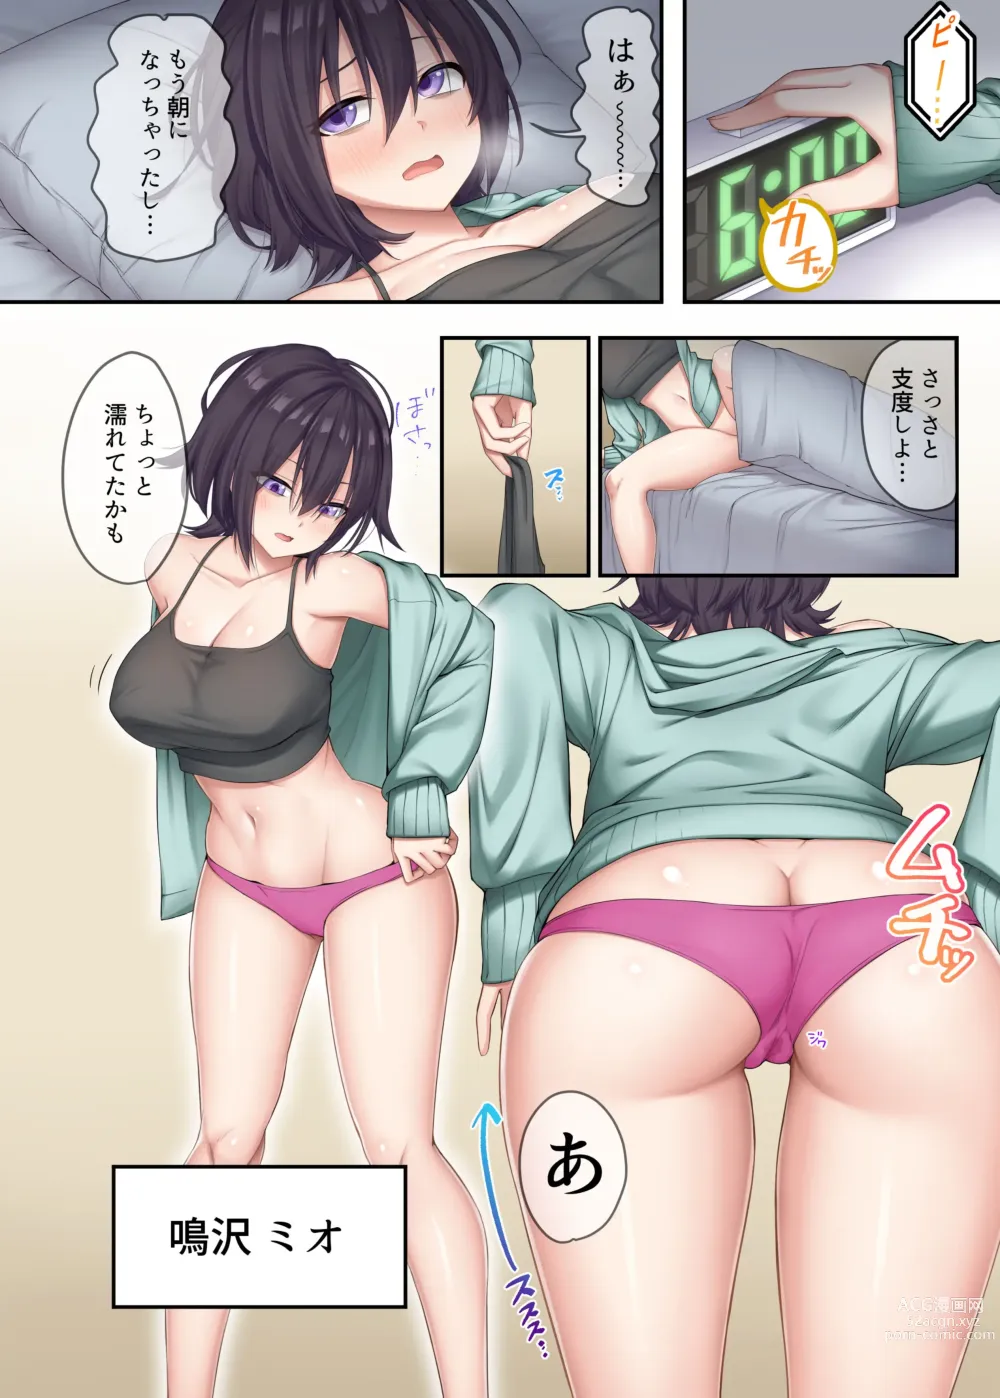 Page 4 of doujinshi 家庭教師として居候したはずが、エロいギャル達とセックスばかりしています。2